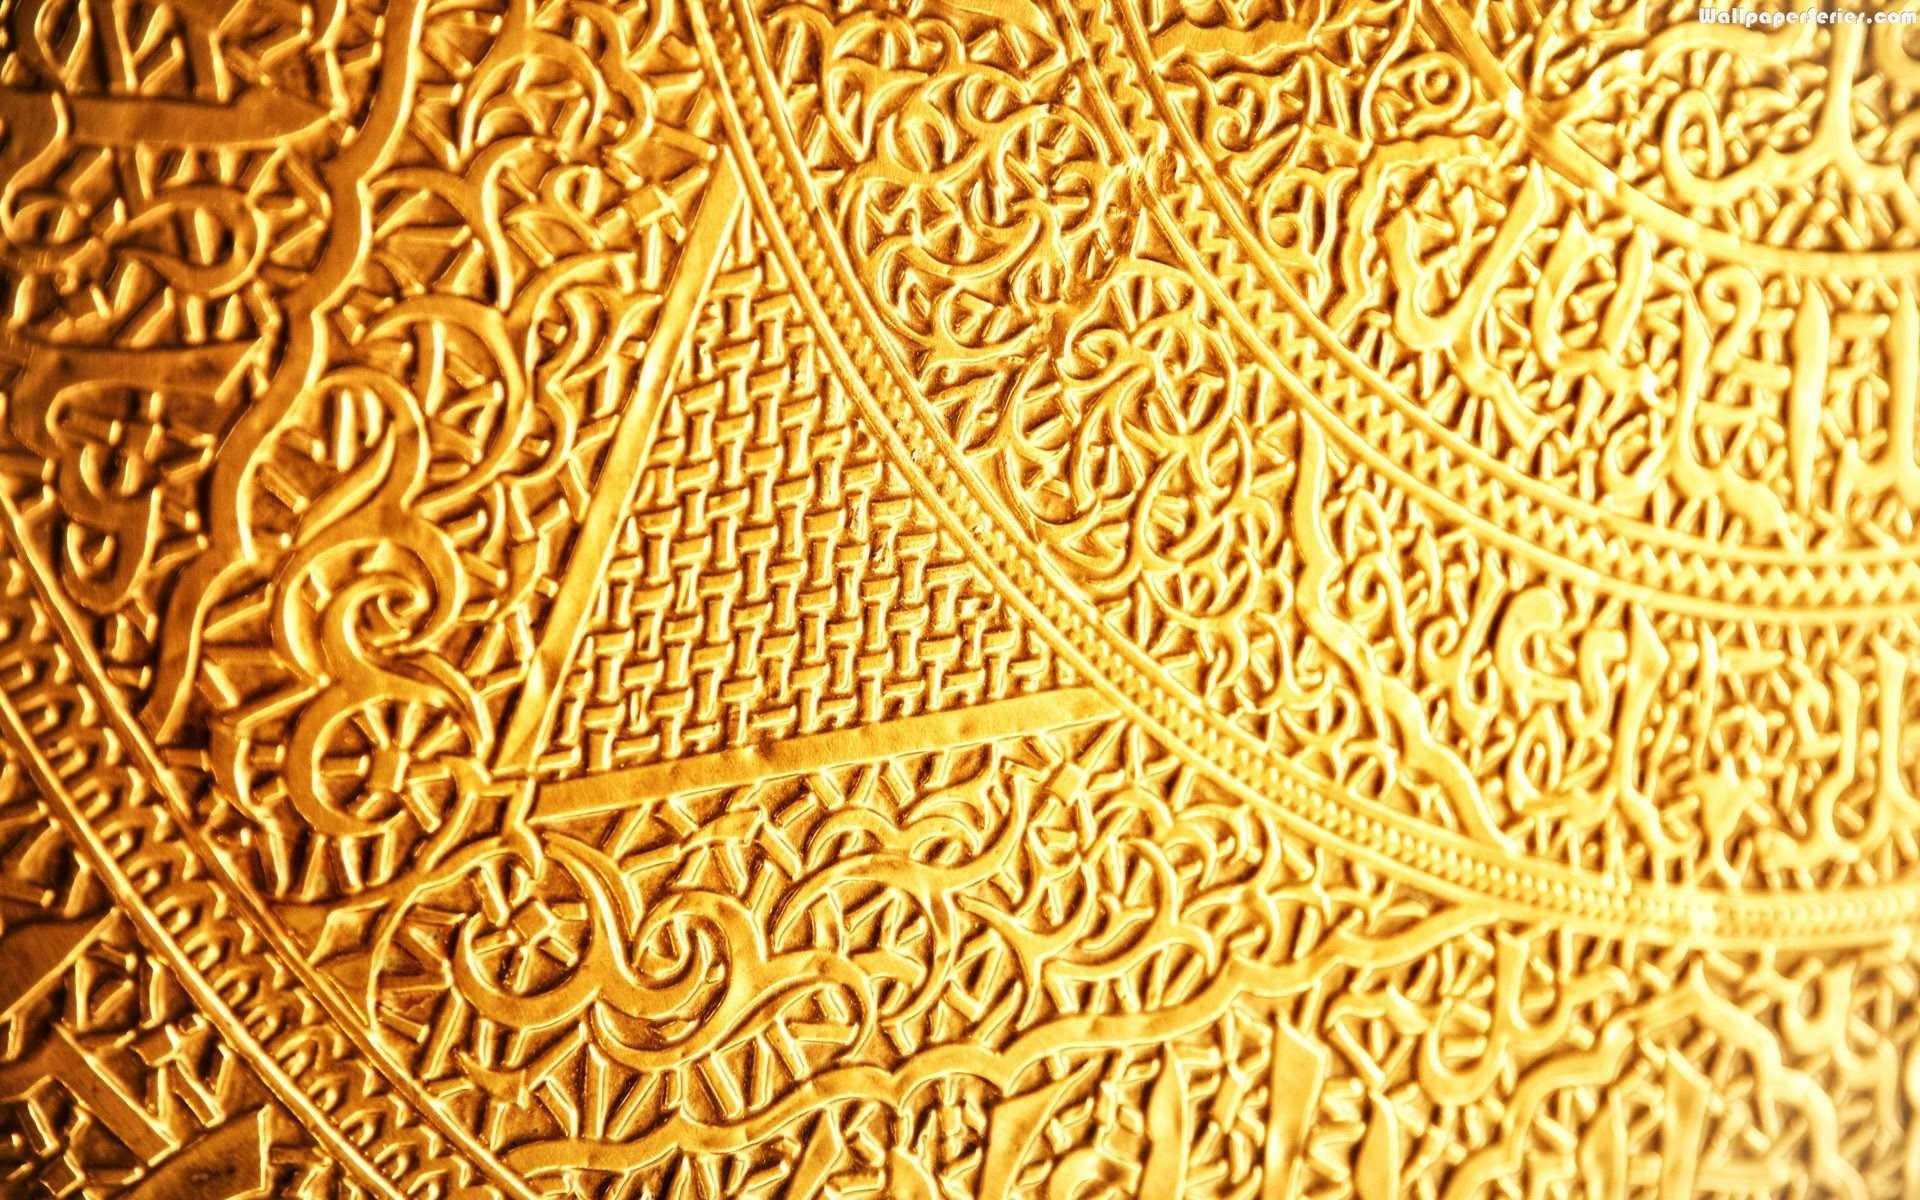 Gold Desktop Wallpaper